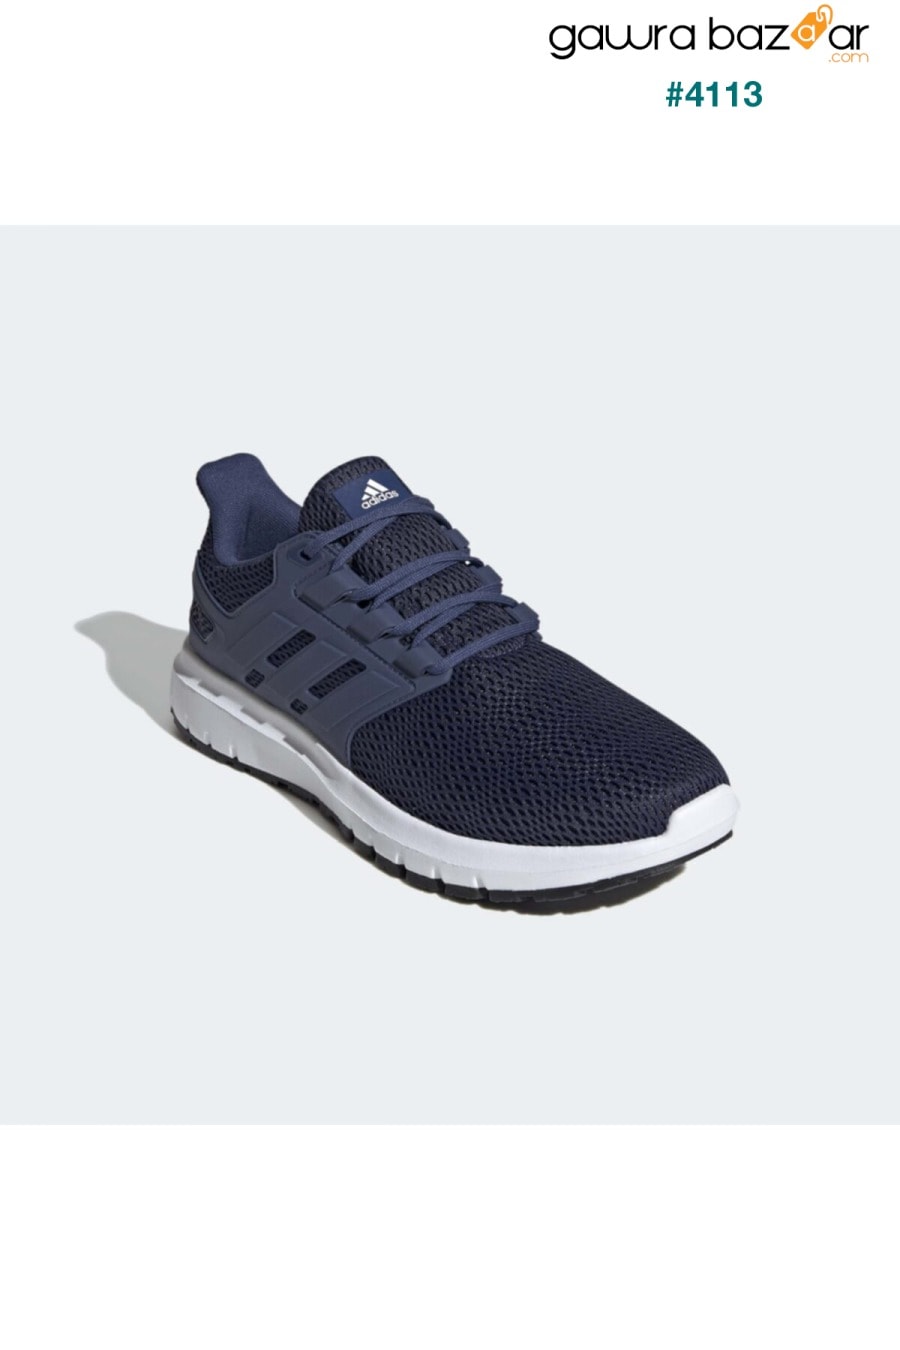 ULTIMASHOW حذاء الجري للرجال باللون الأزرق الداكن 100663973 adidas 3